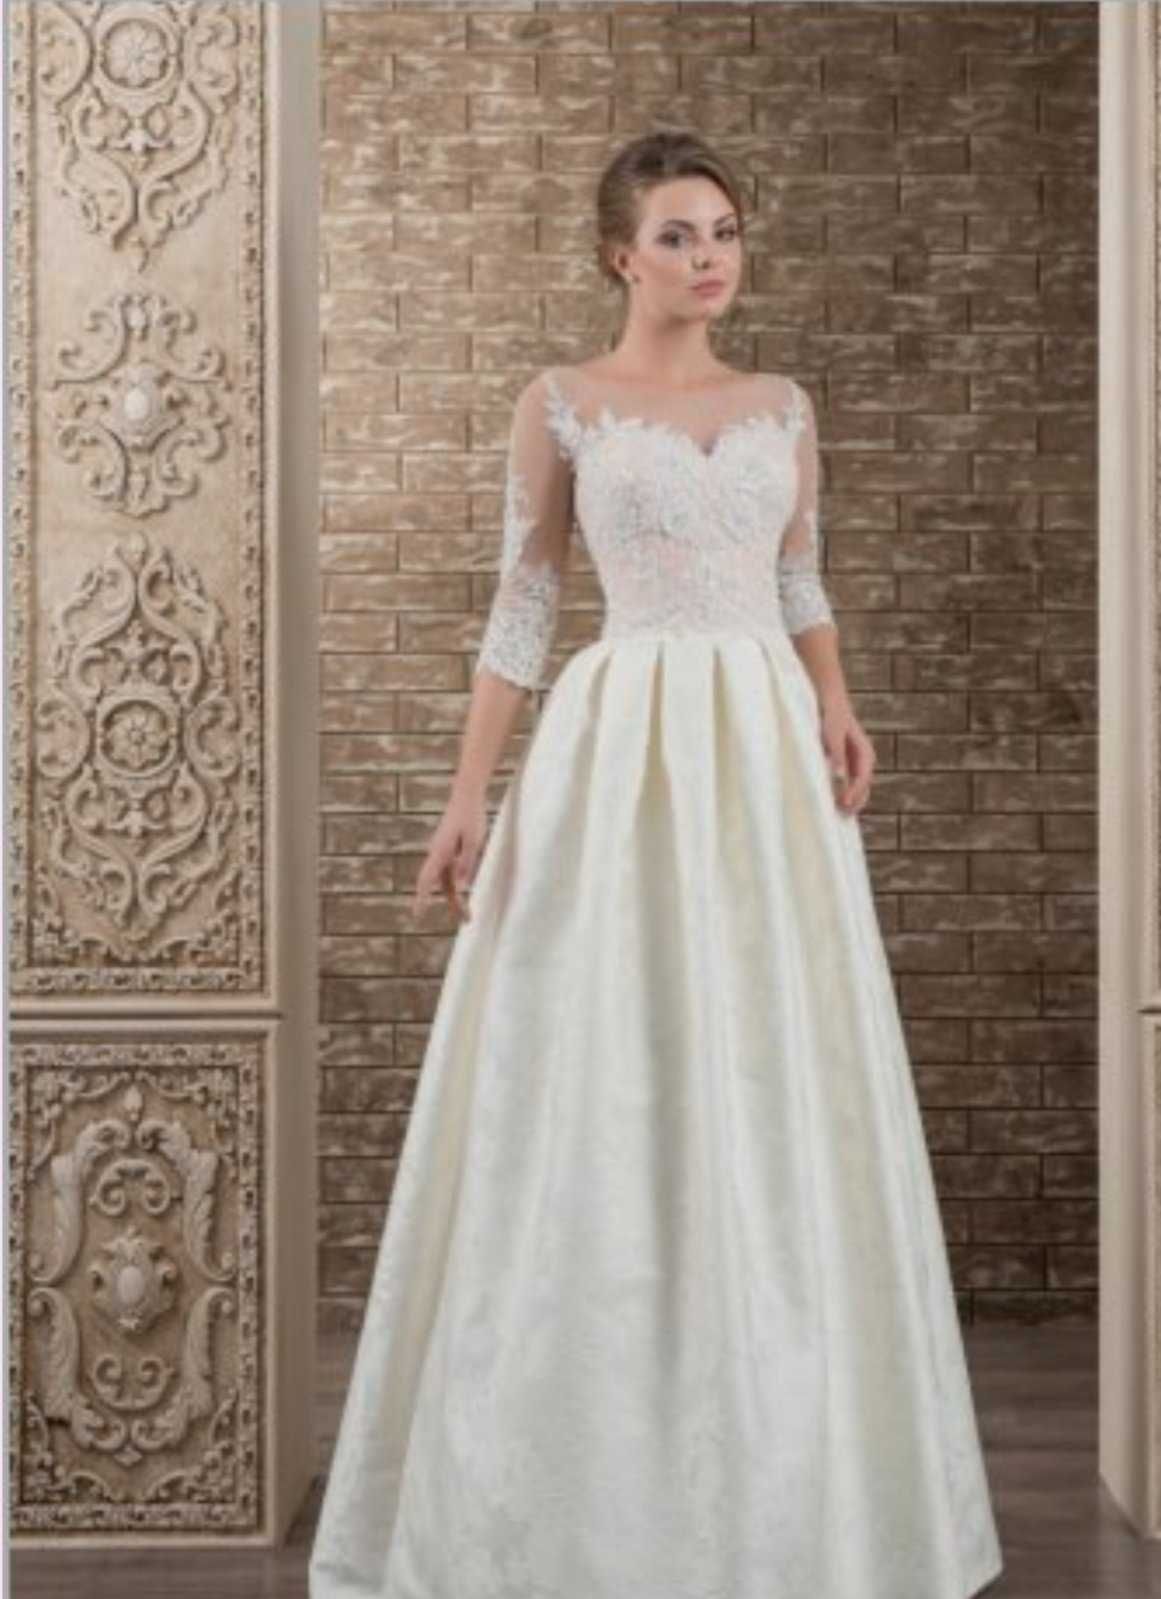 Свадебное платье для невыcокой девушки цвет айвори размер XS, 1500грн